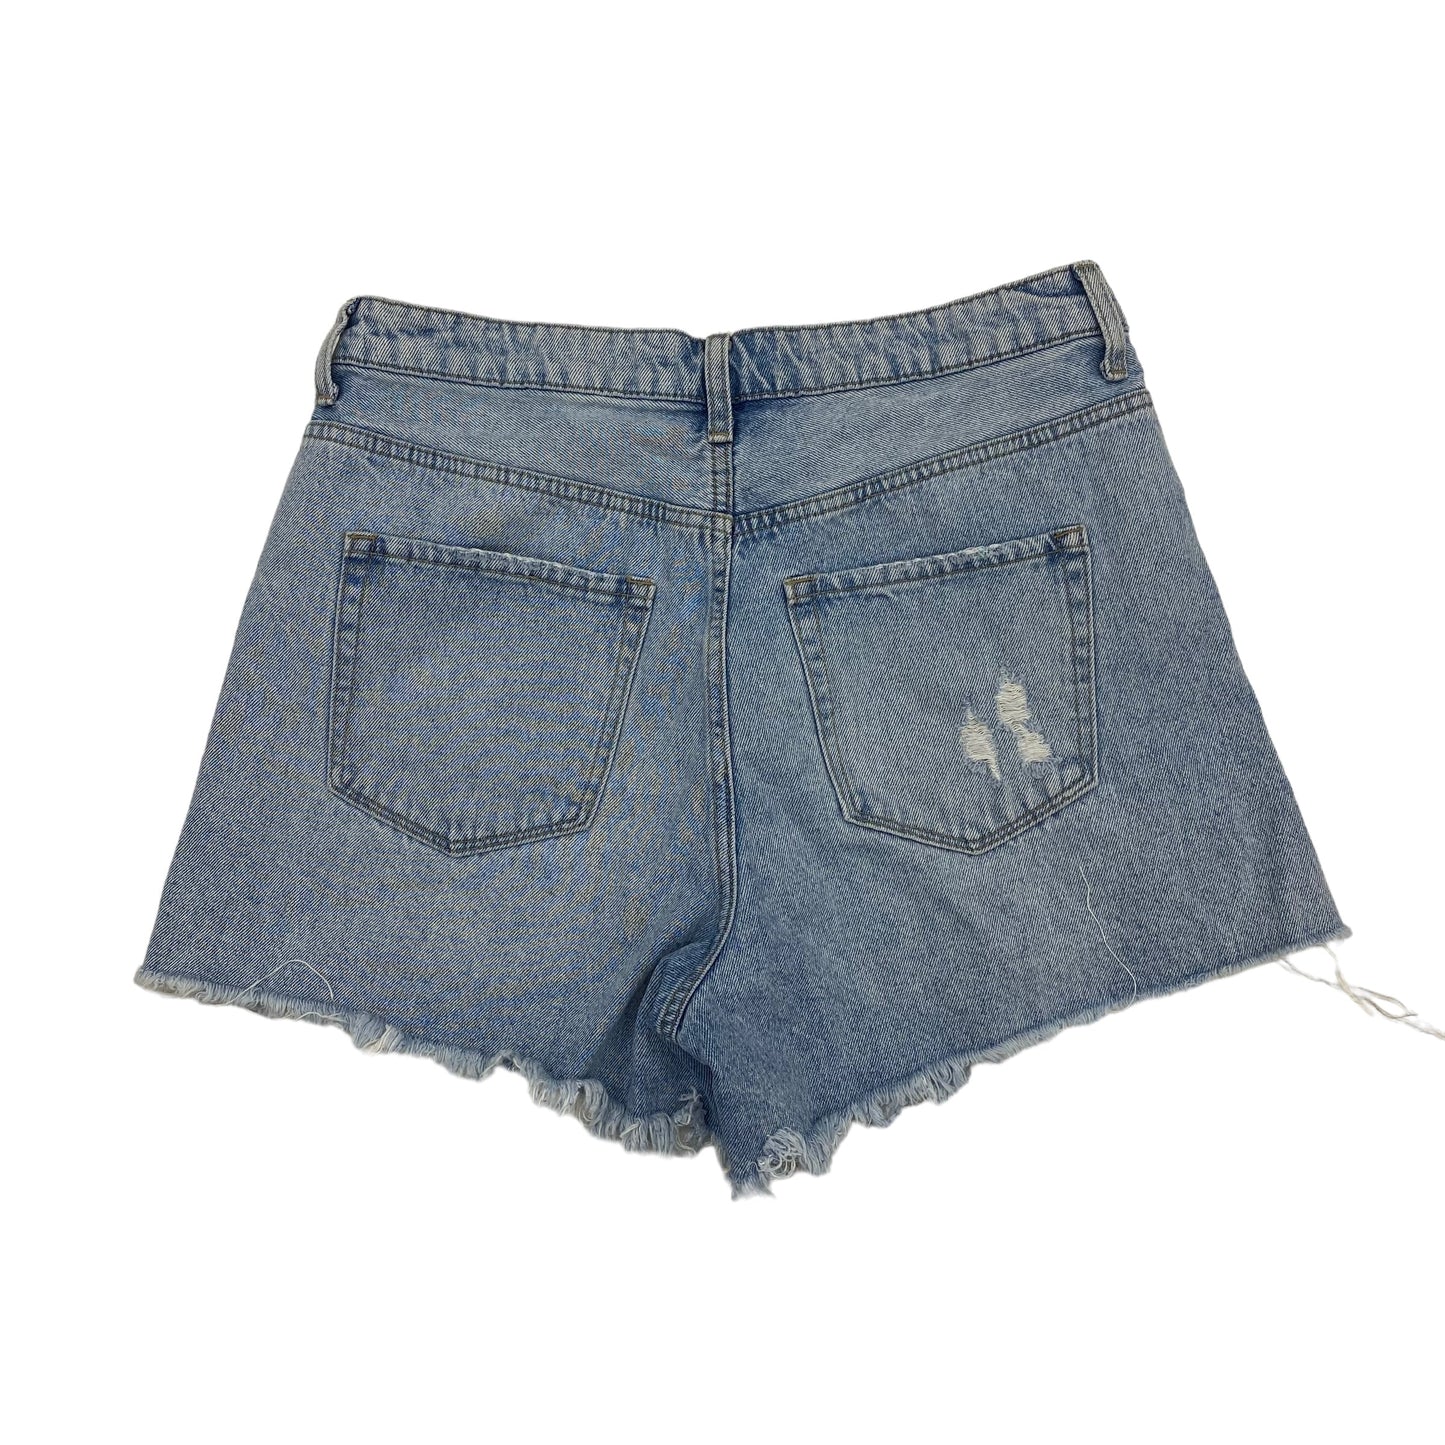 Shorts By Vervet  Size: Xl